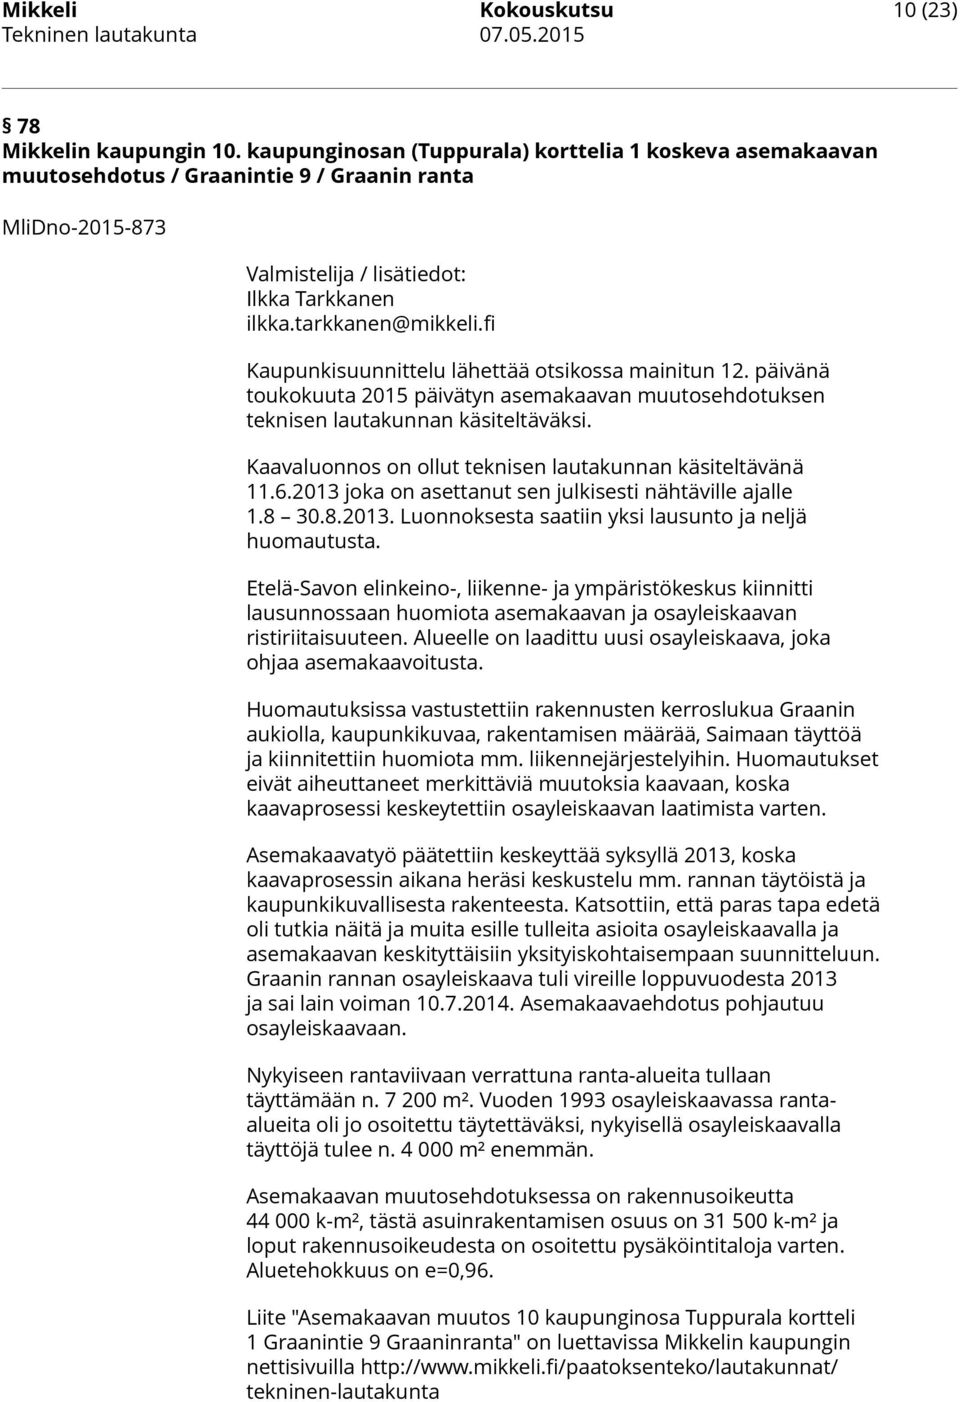 fi Kaupunkisuunnittelu lähettää otsikossa mainitun 12. päivänä toukokuuta 2015 päivätyn asemakaavan muutosehdotuksen teknisen lautakunnan käsiteltäväksi.